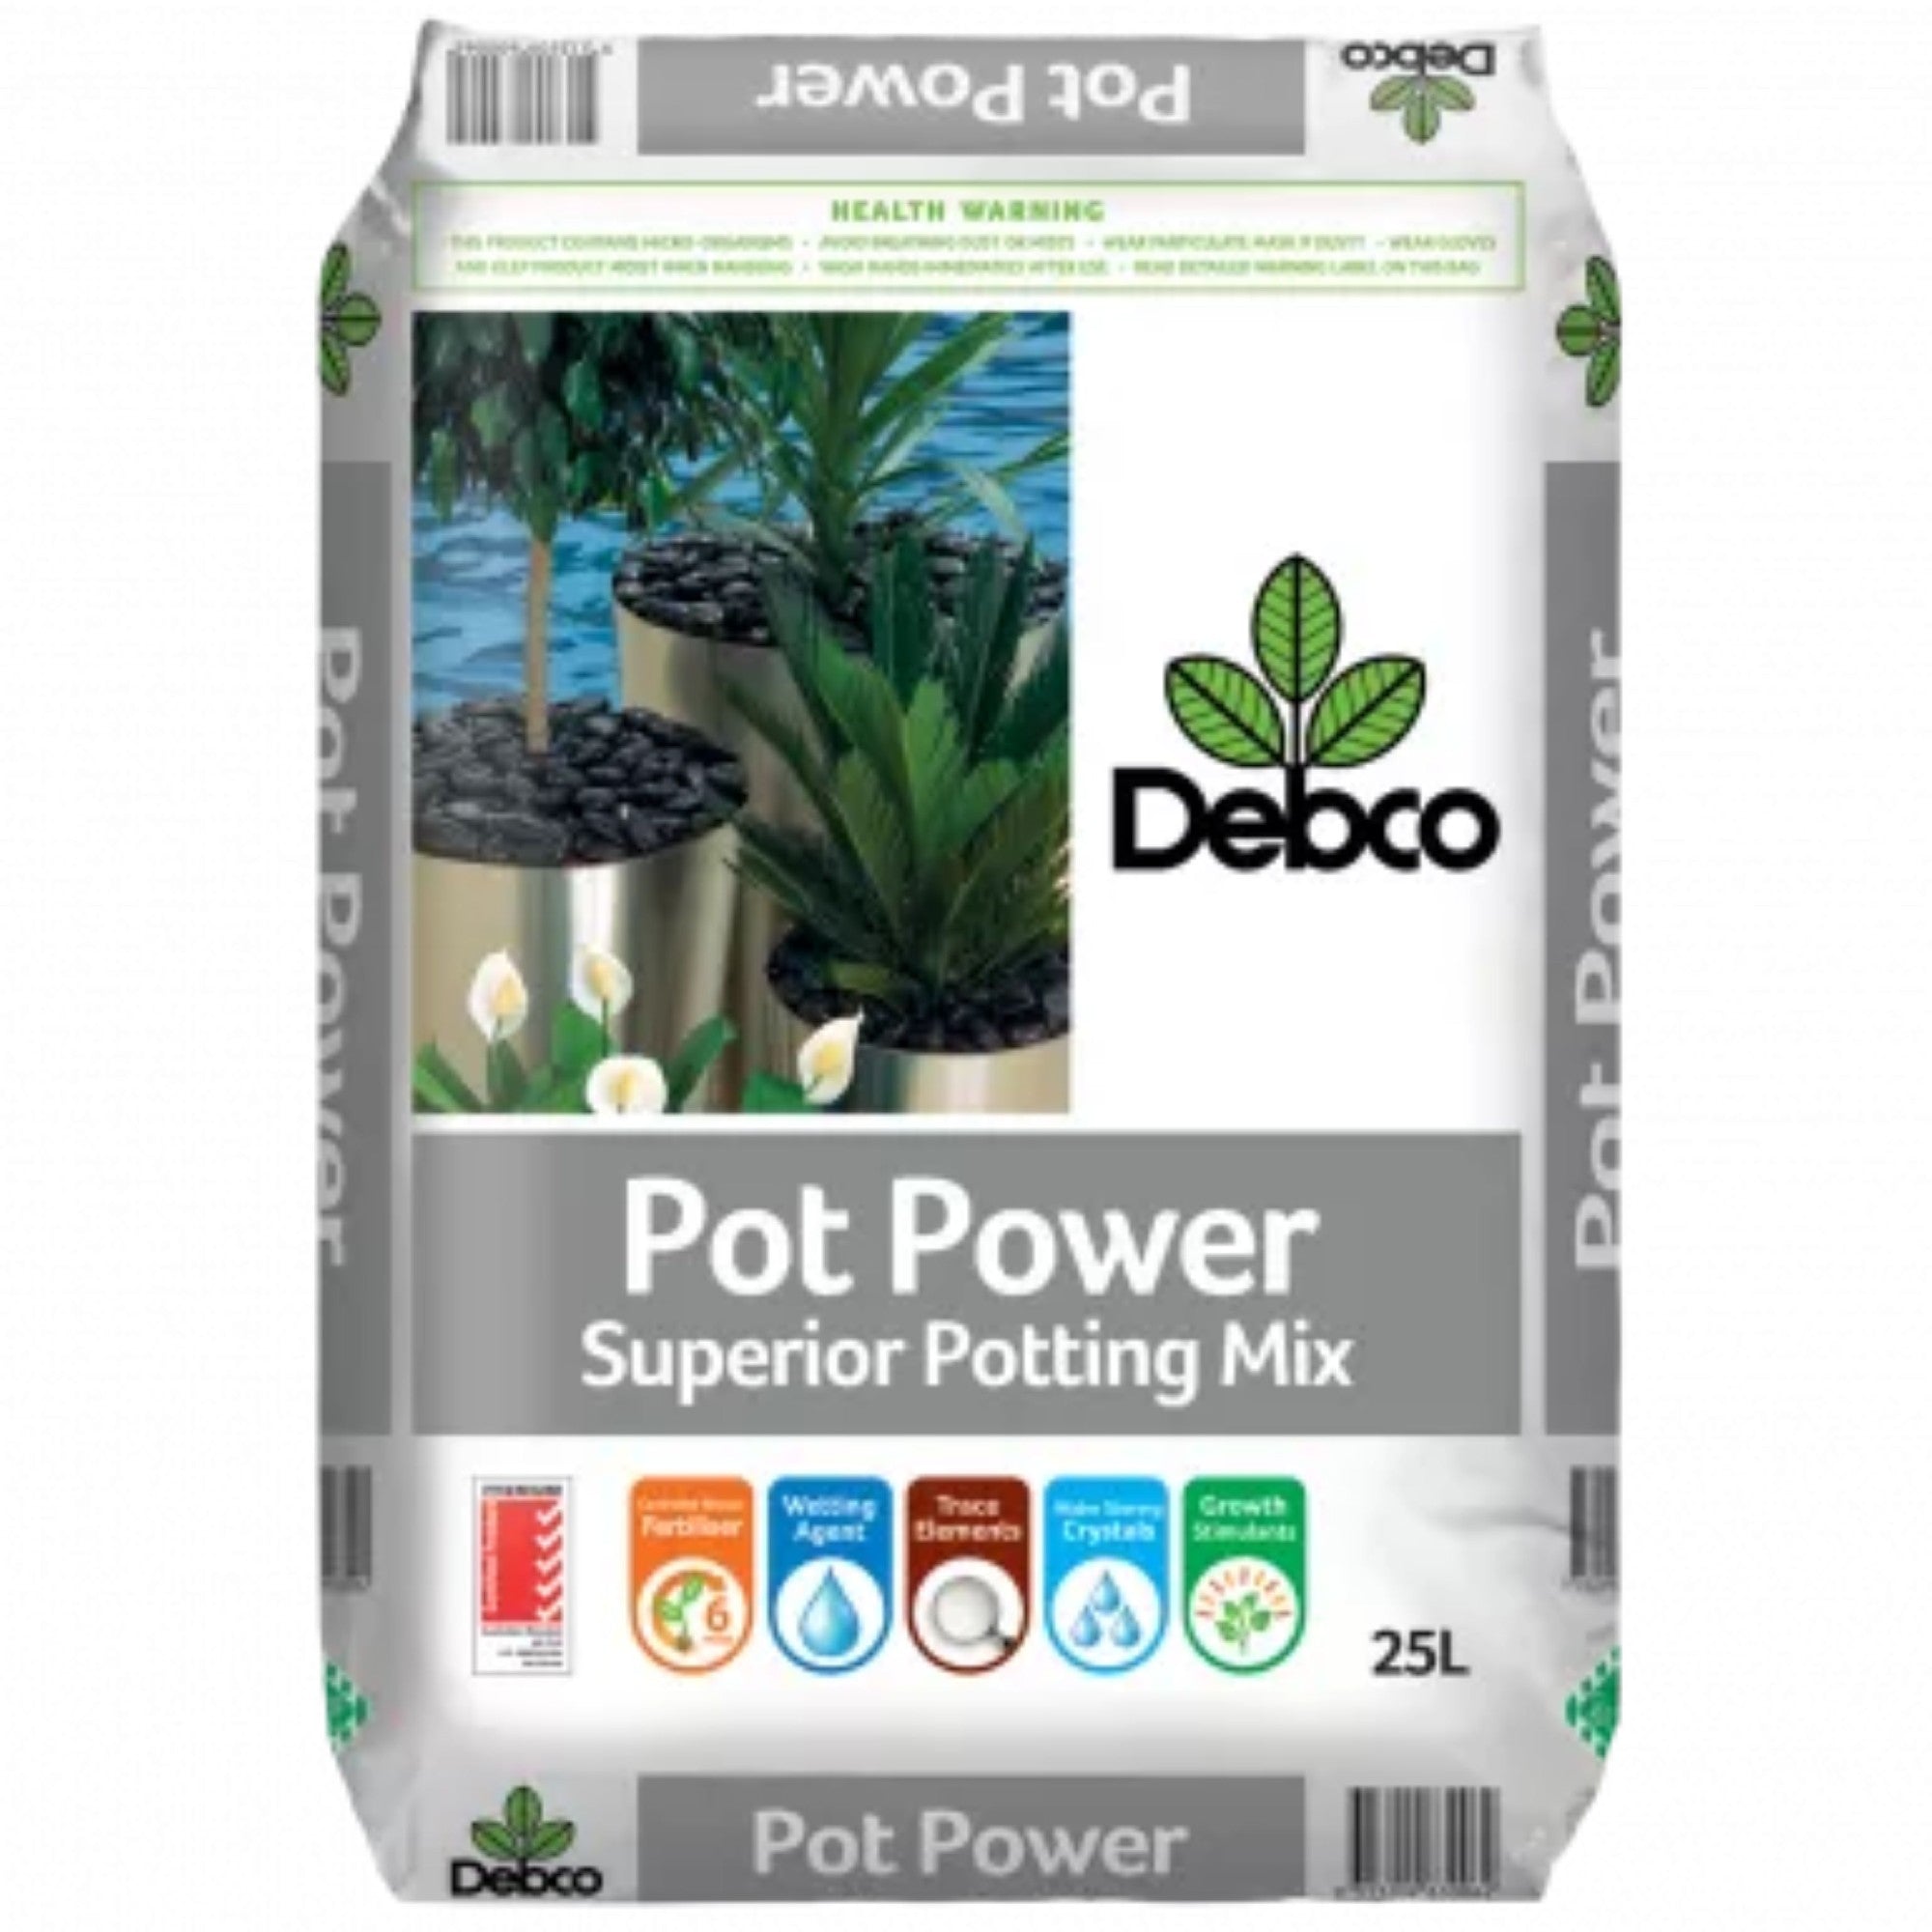 Debco Pot Power Potting Mix 25l